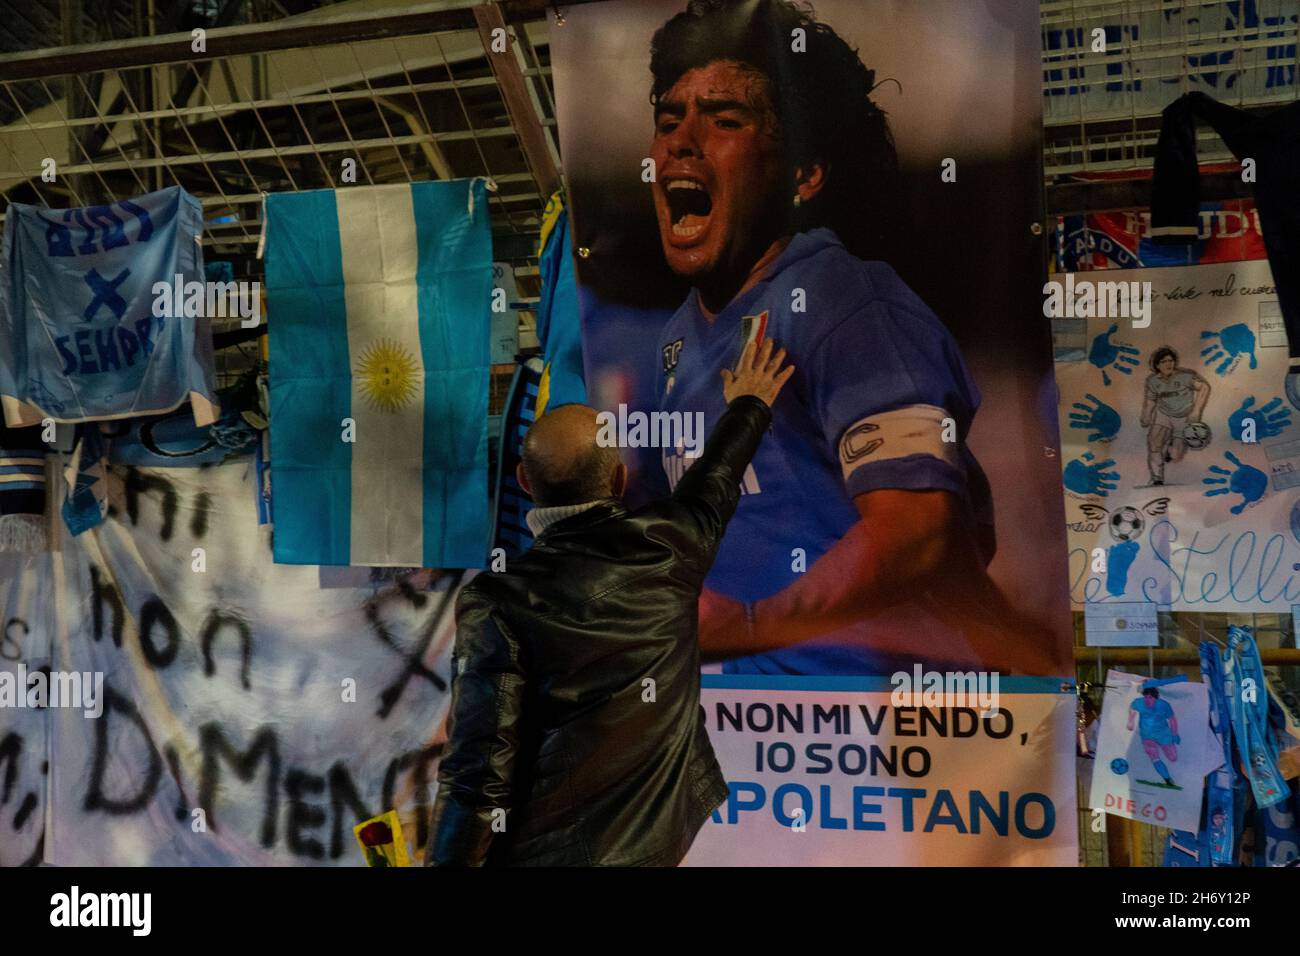 Napoli, stadio San Paolo, cimeli per ricordare Maradona nei giorni della morte Foto Stock